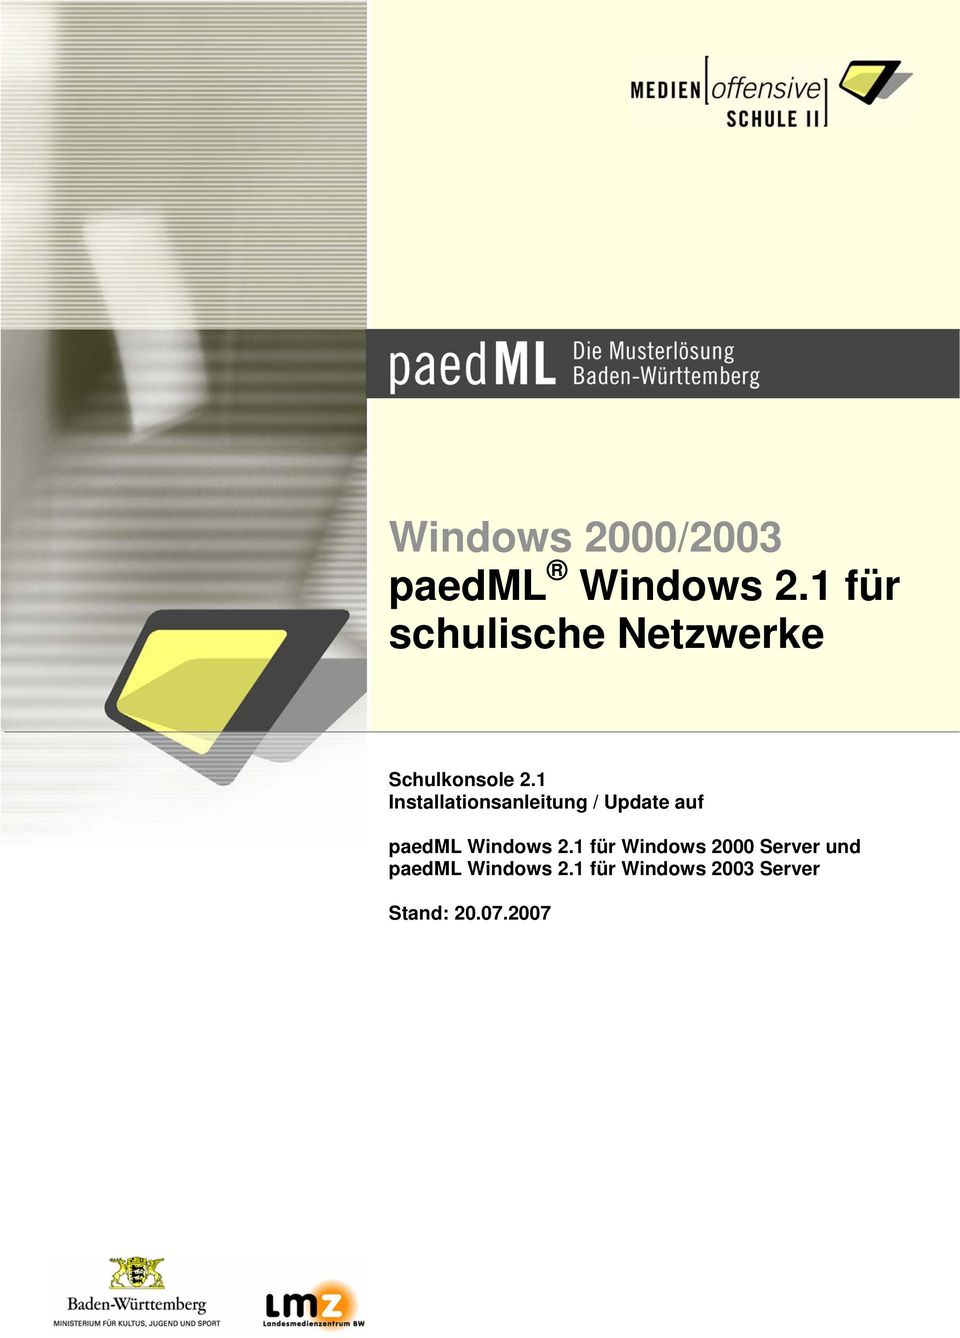 1 Installationsanleitung / Update auf paedml Windows 2.